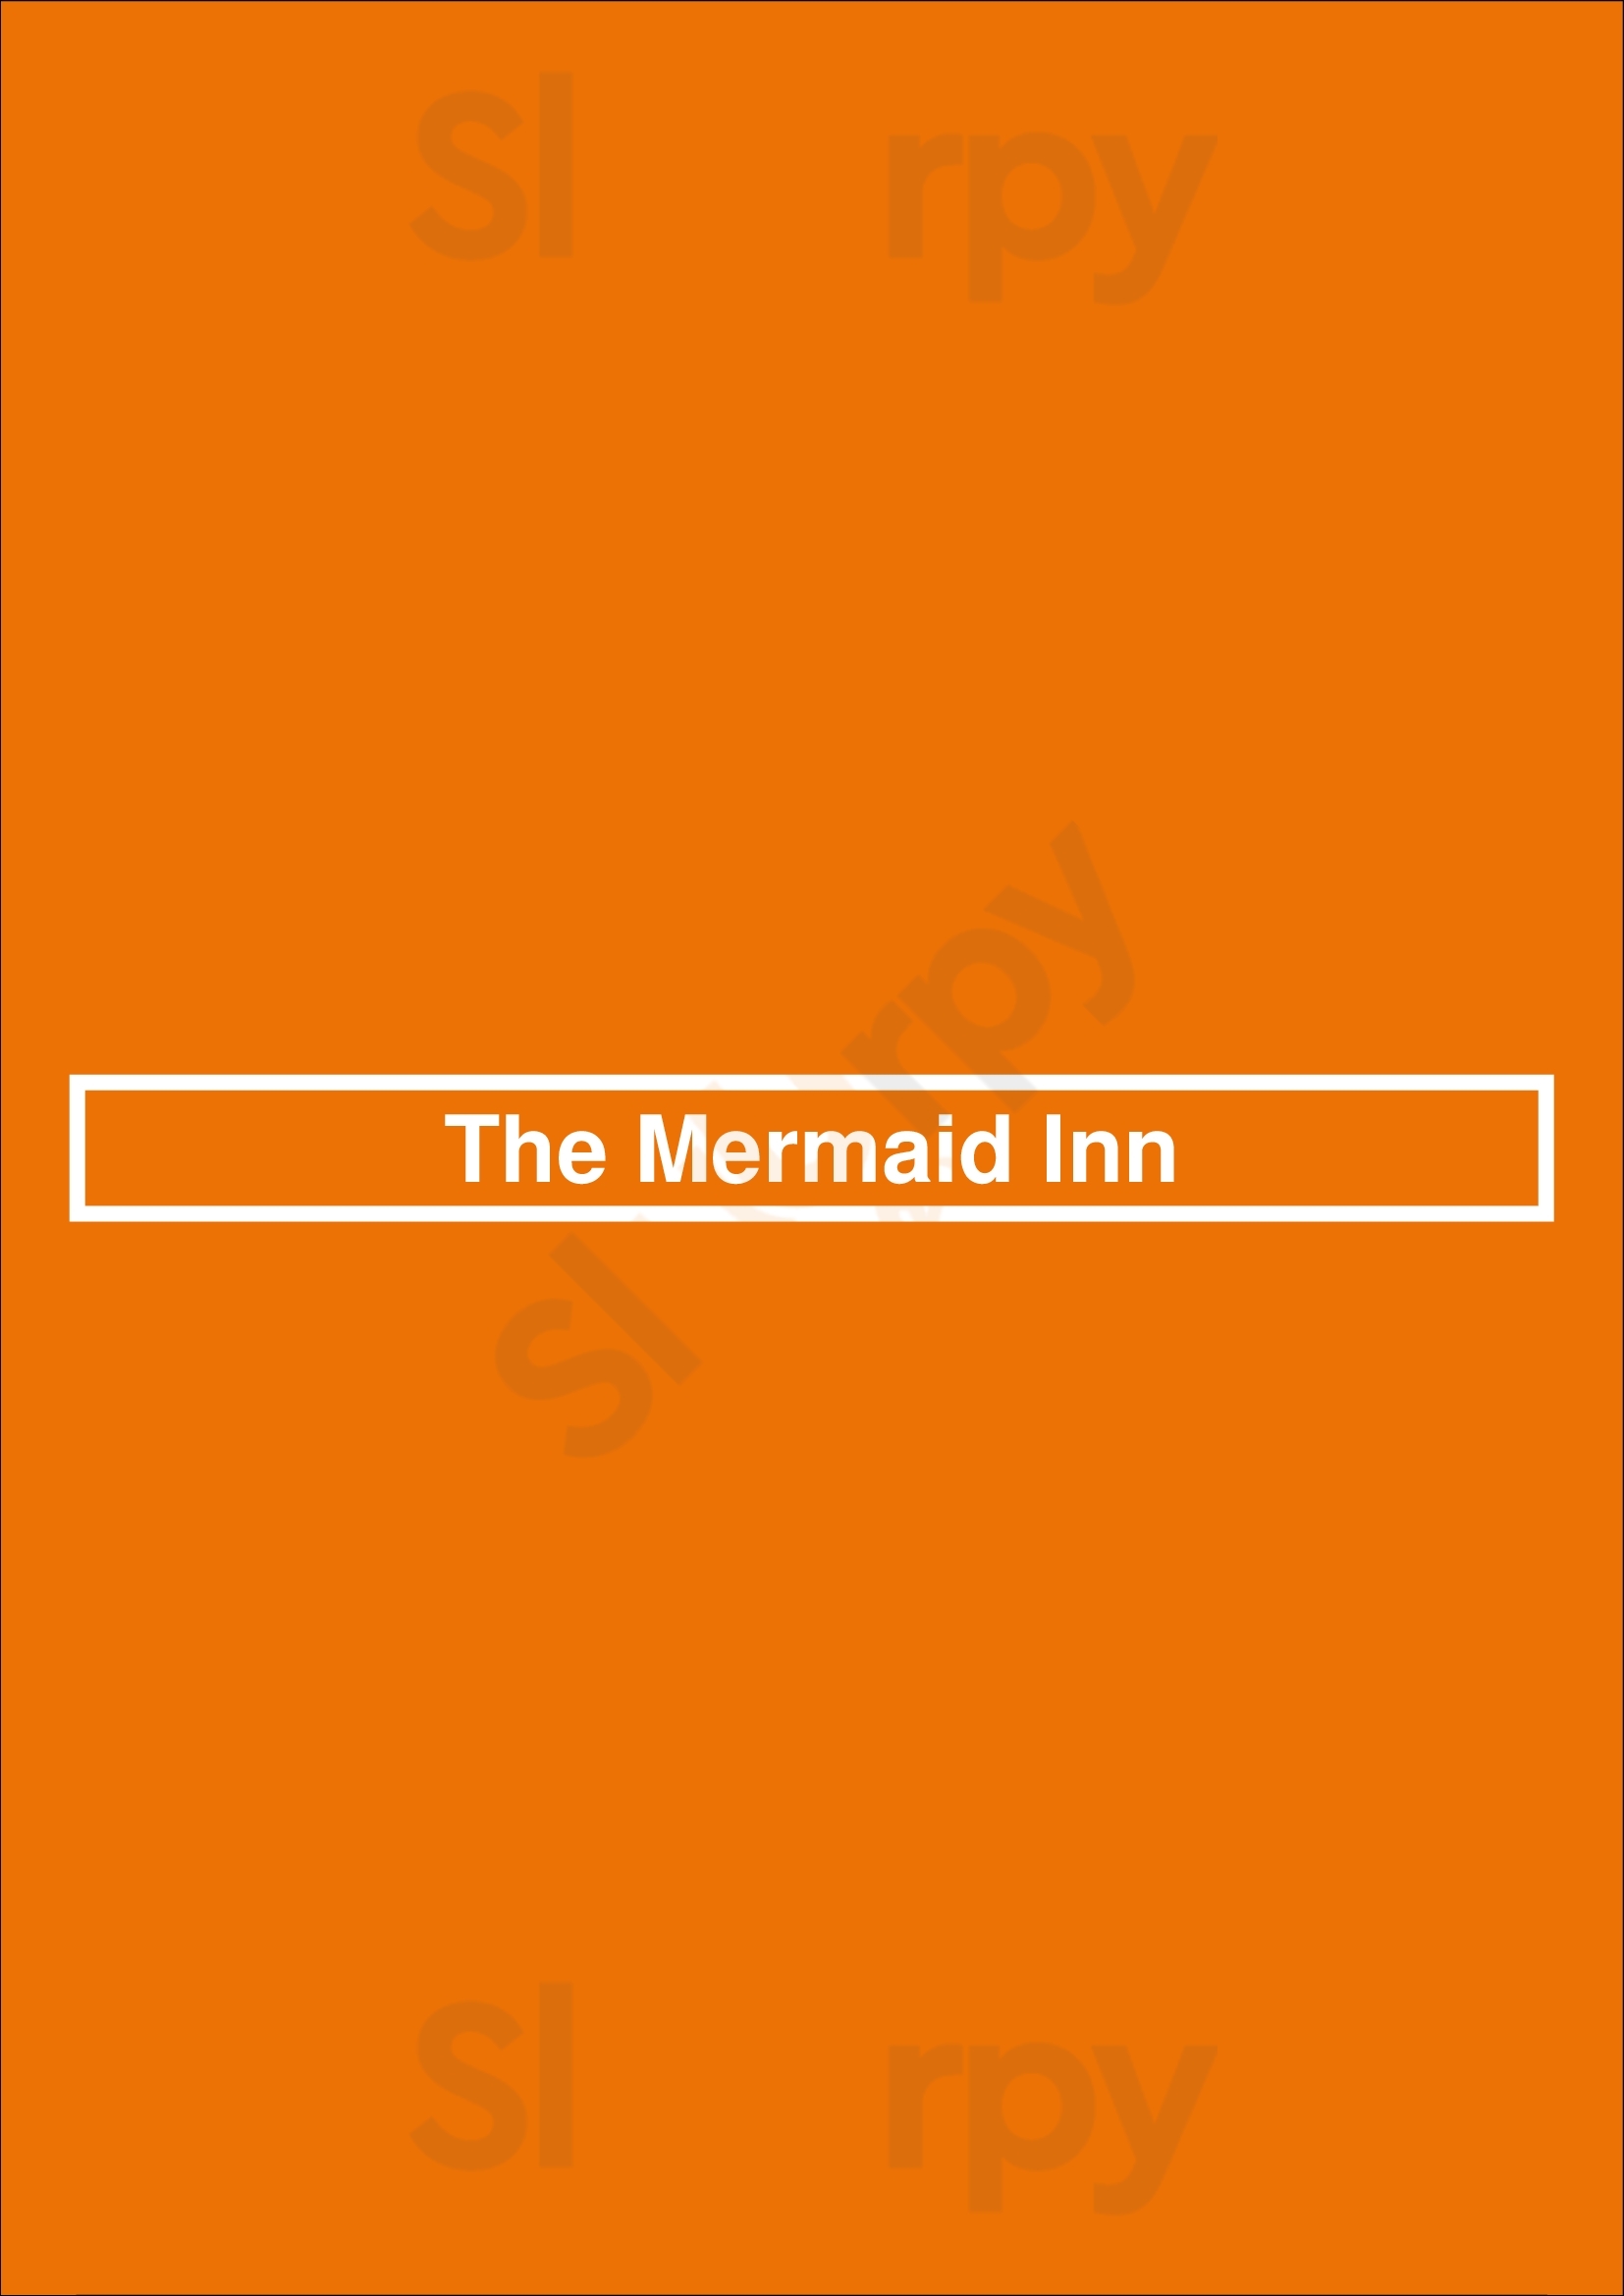 The Mermaid Inn New York City Menu - 1